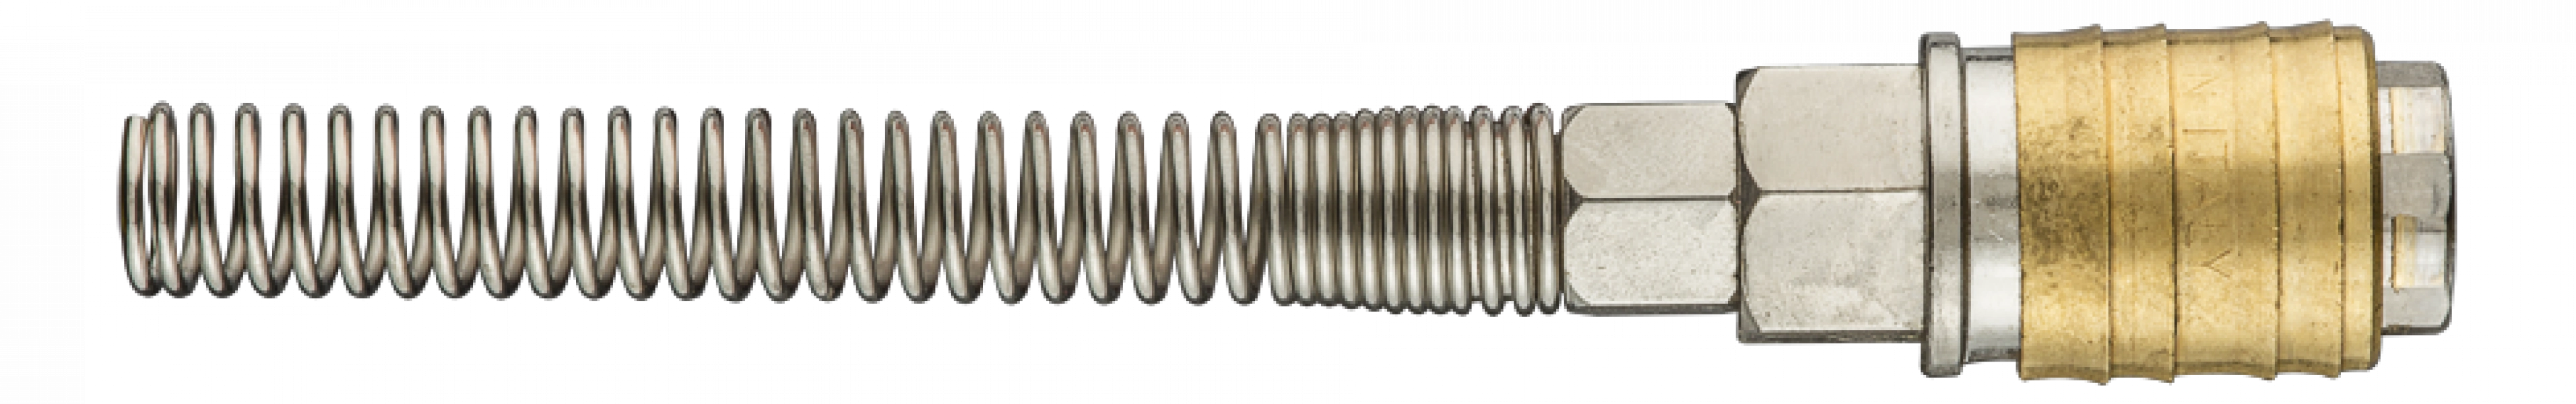 Szybkozłączka do kompresora z wyjściem na wąż 6 x 8 mm